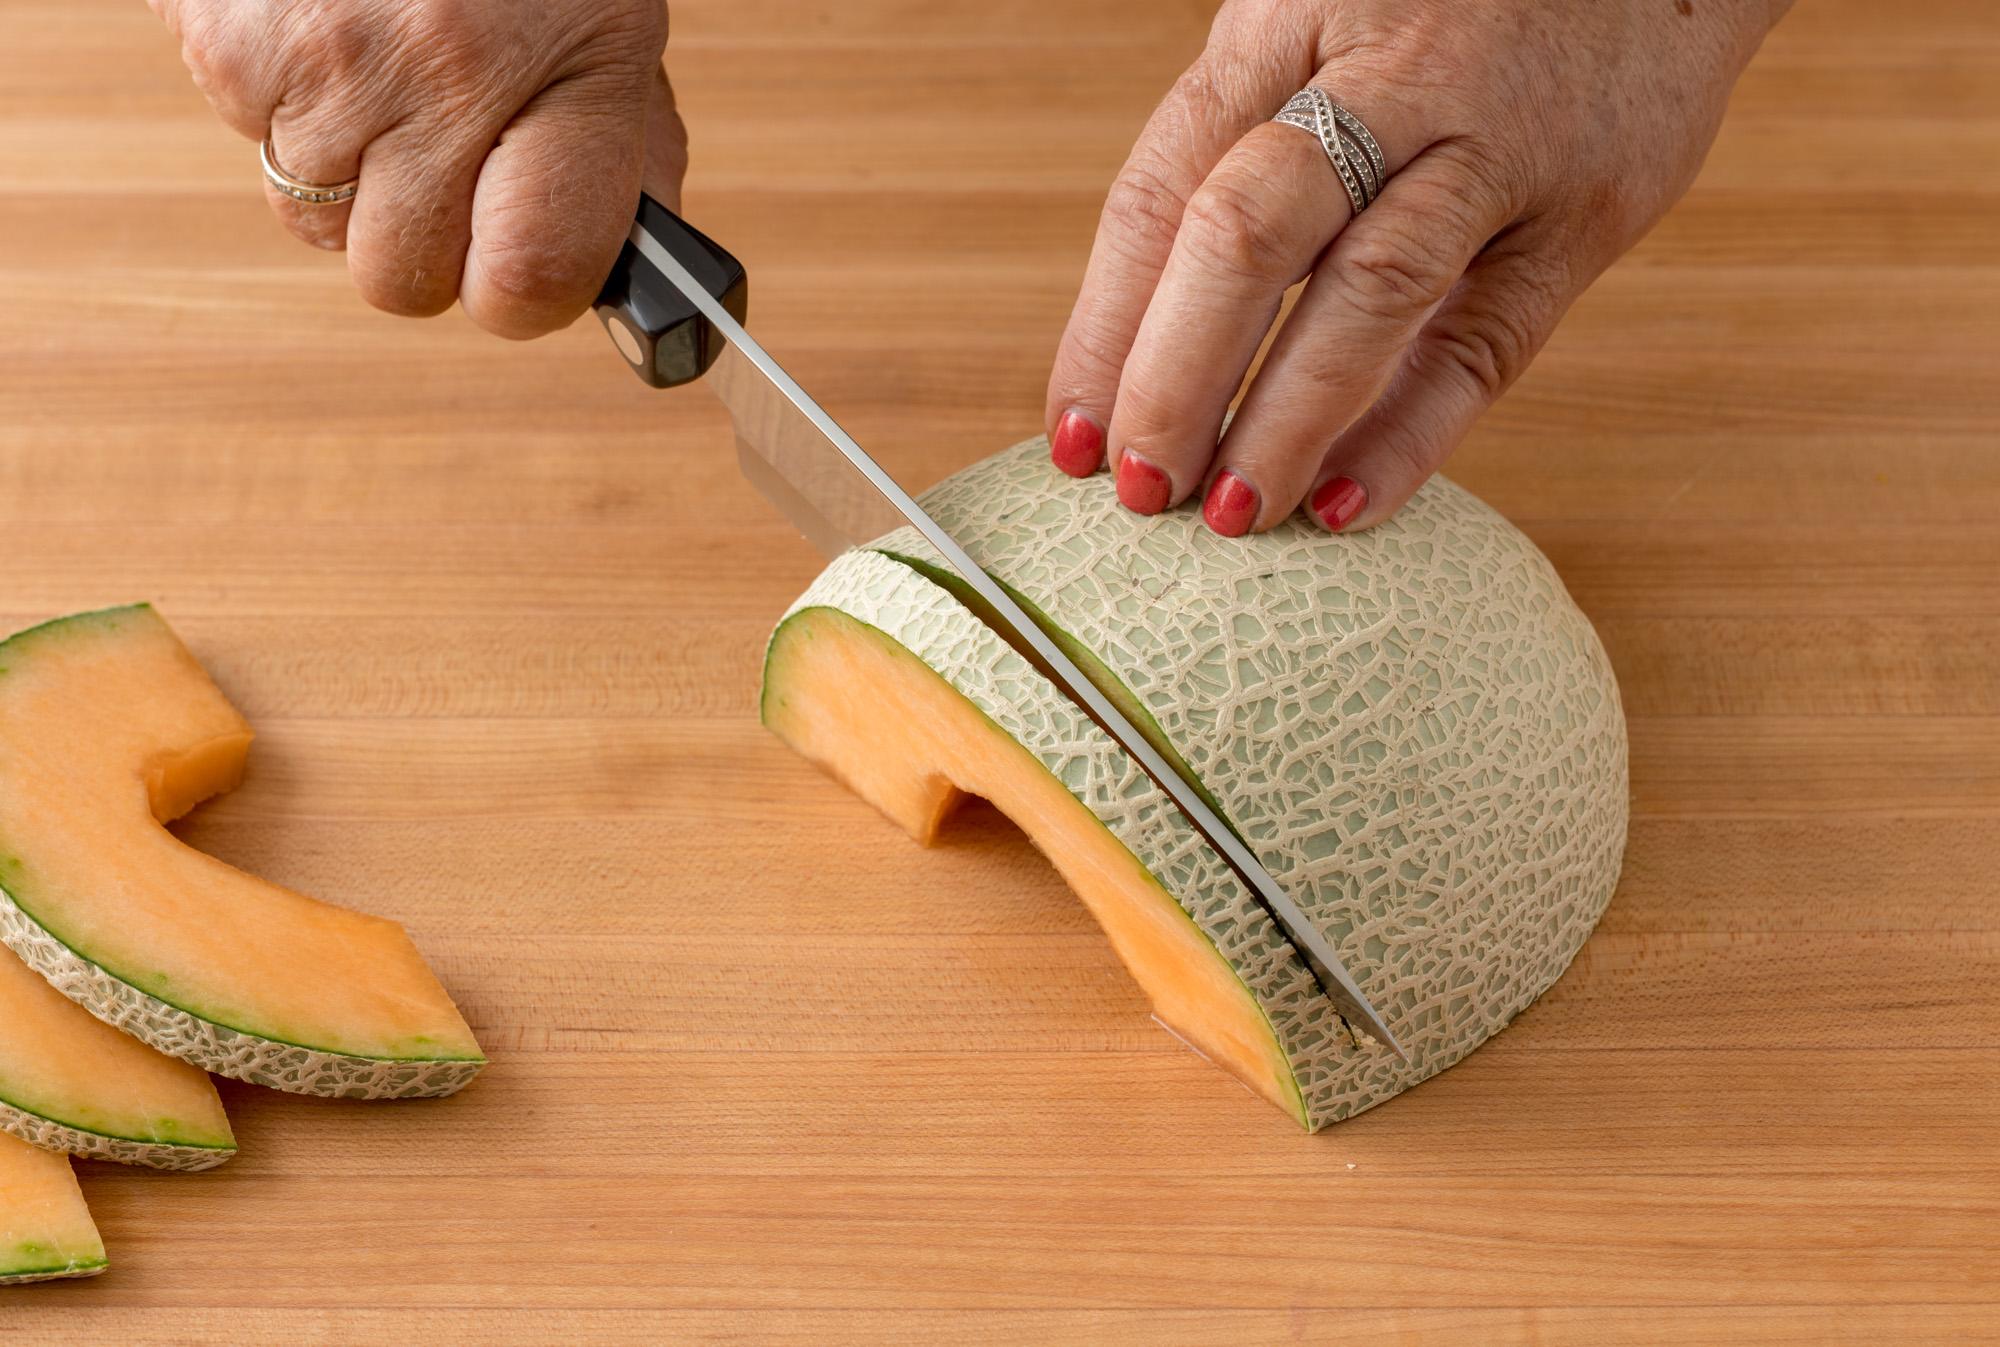 How to Cut Cantaloupe